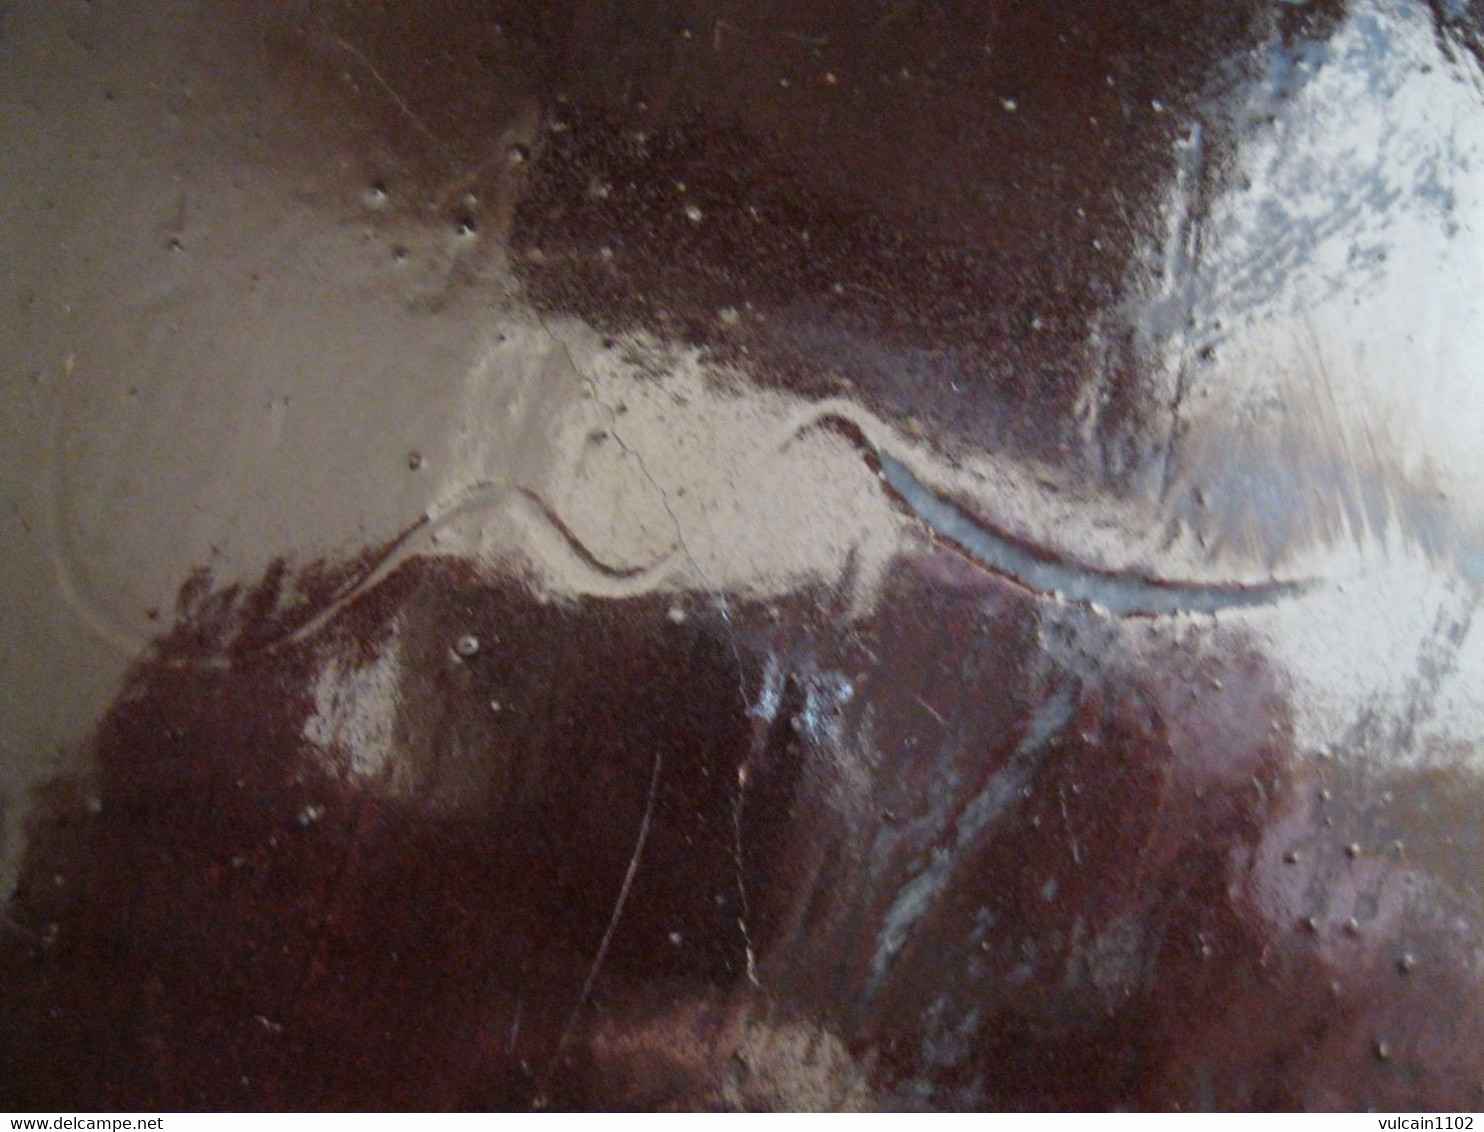 ANCIEN GRAND PLAT CUL NOIR ROUEN OU FORGES LES EAUX (39 cm) 18ème